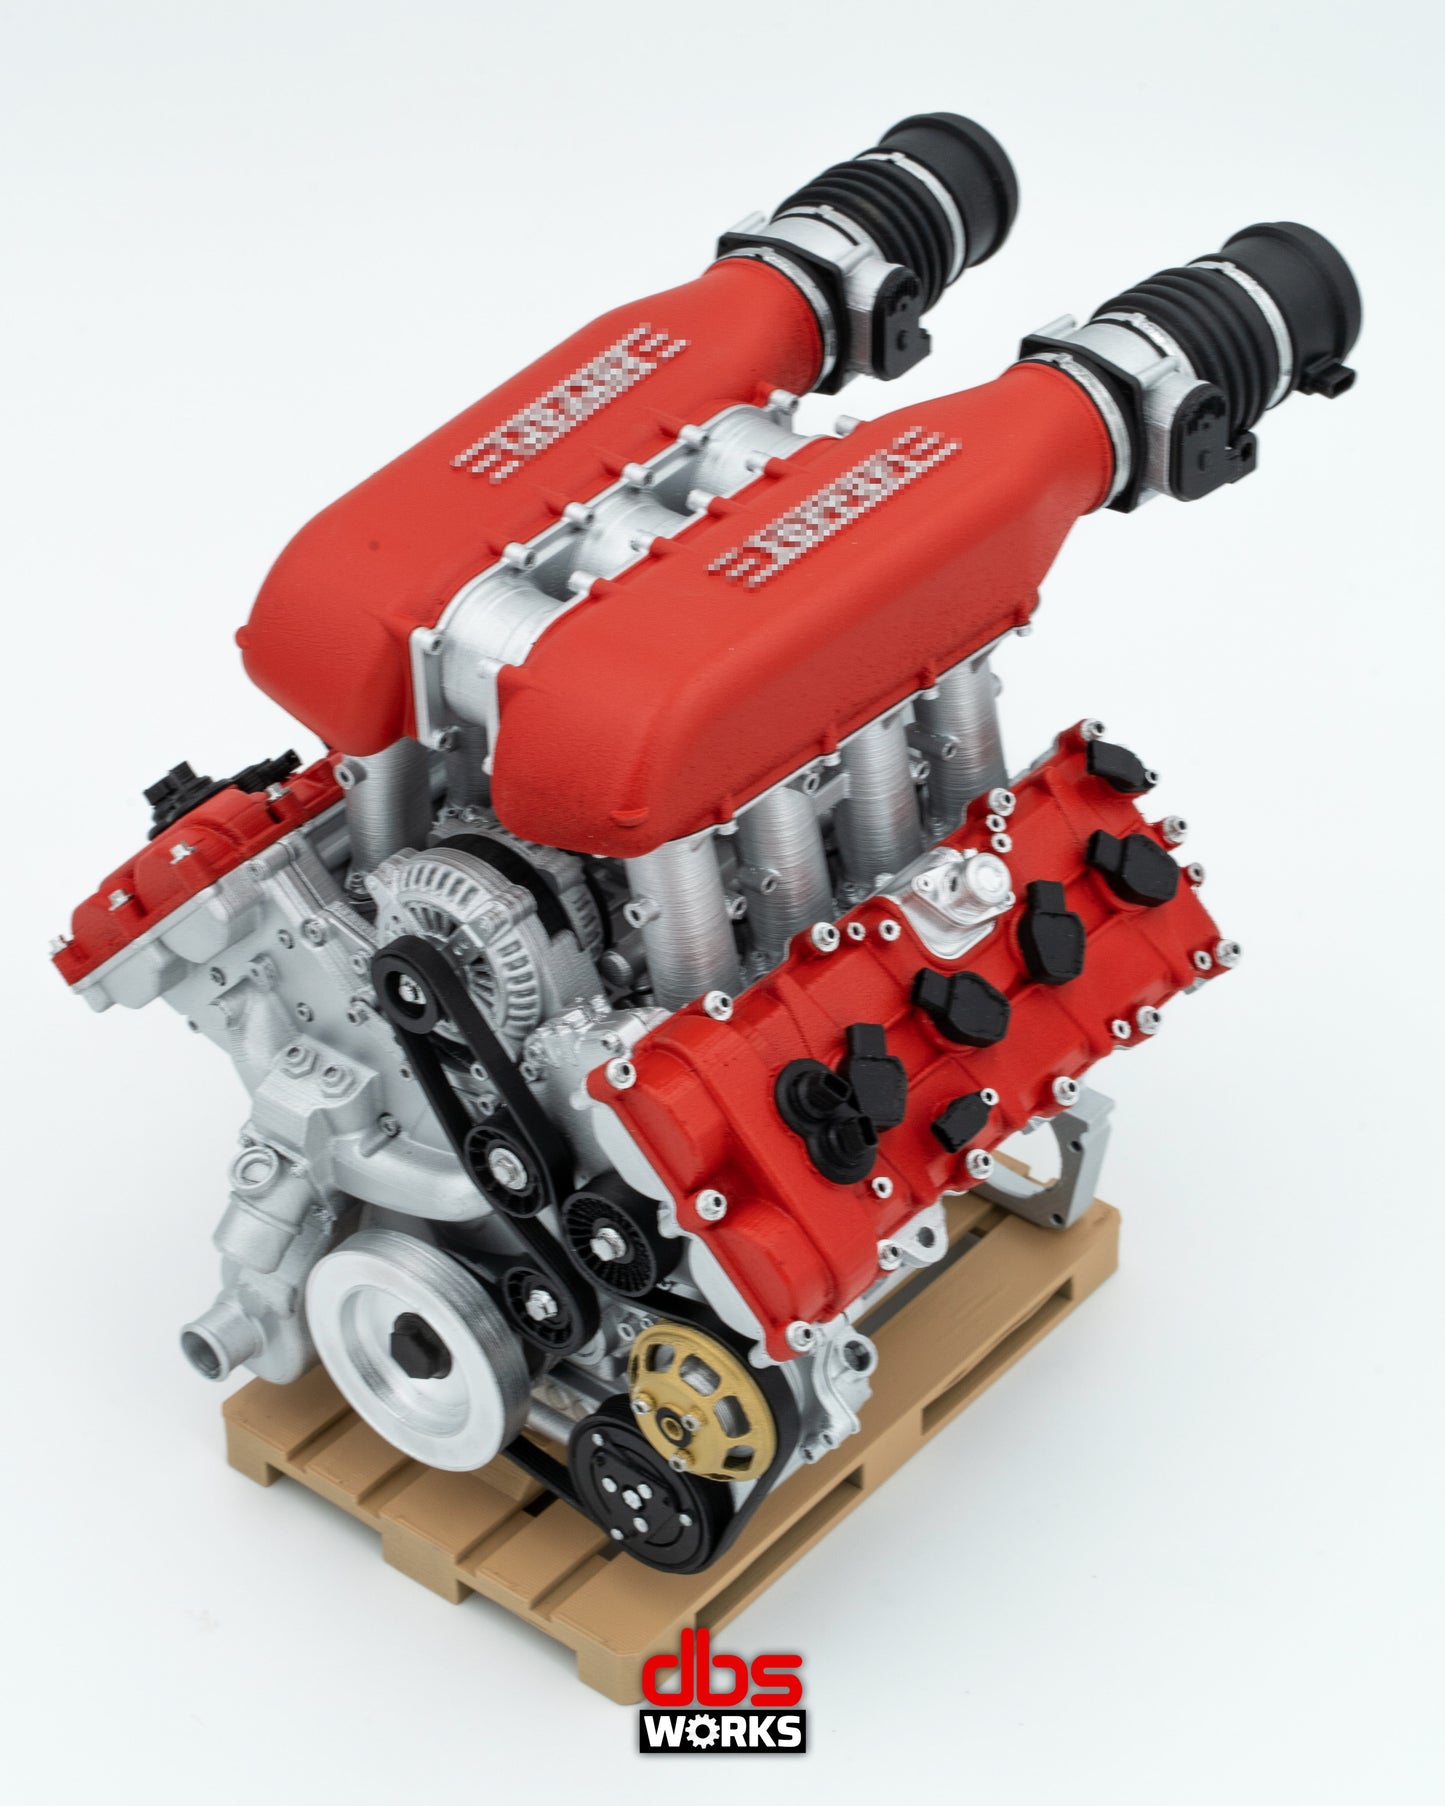 1/4 F136 FB Engine - Assembled